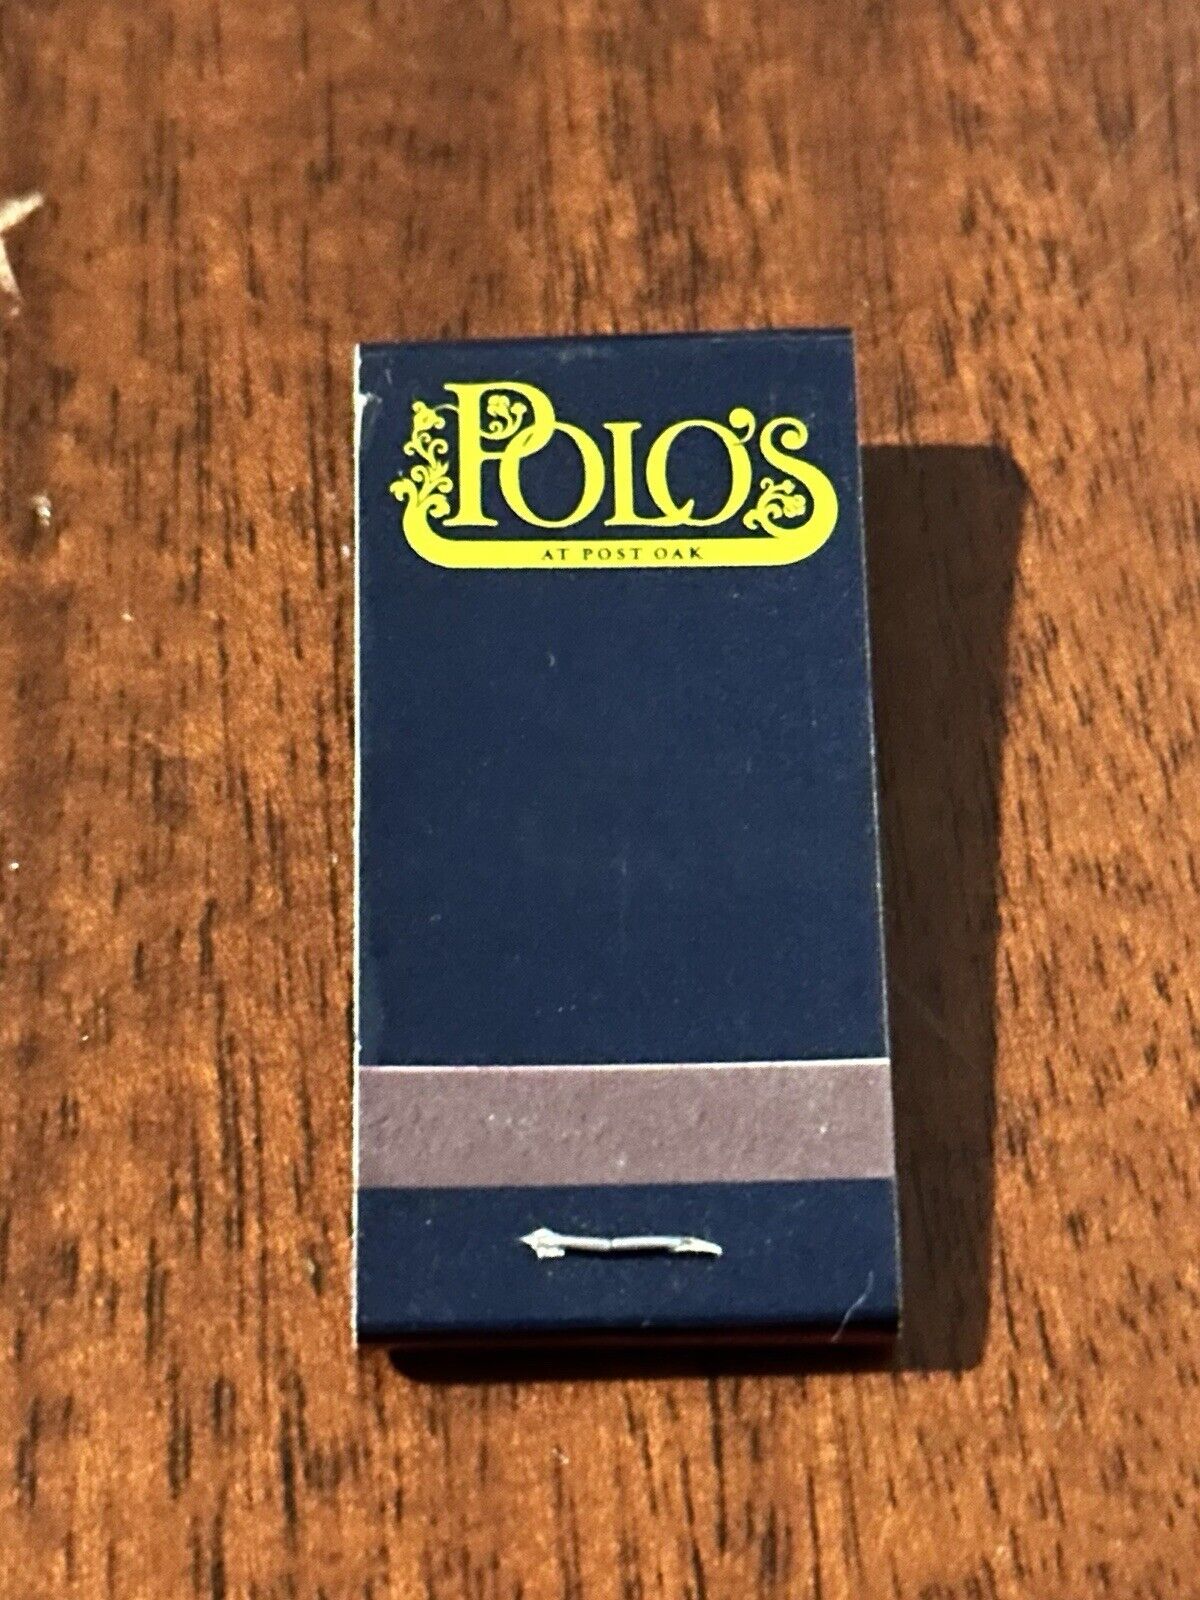 Vintage Matchbook Polos Restaurant At Post Oak Houston Texas Mini